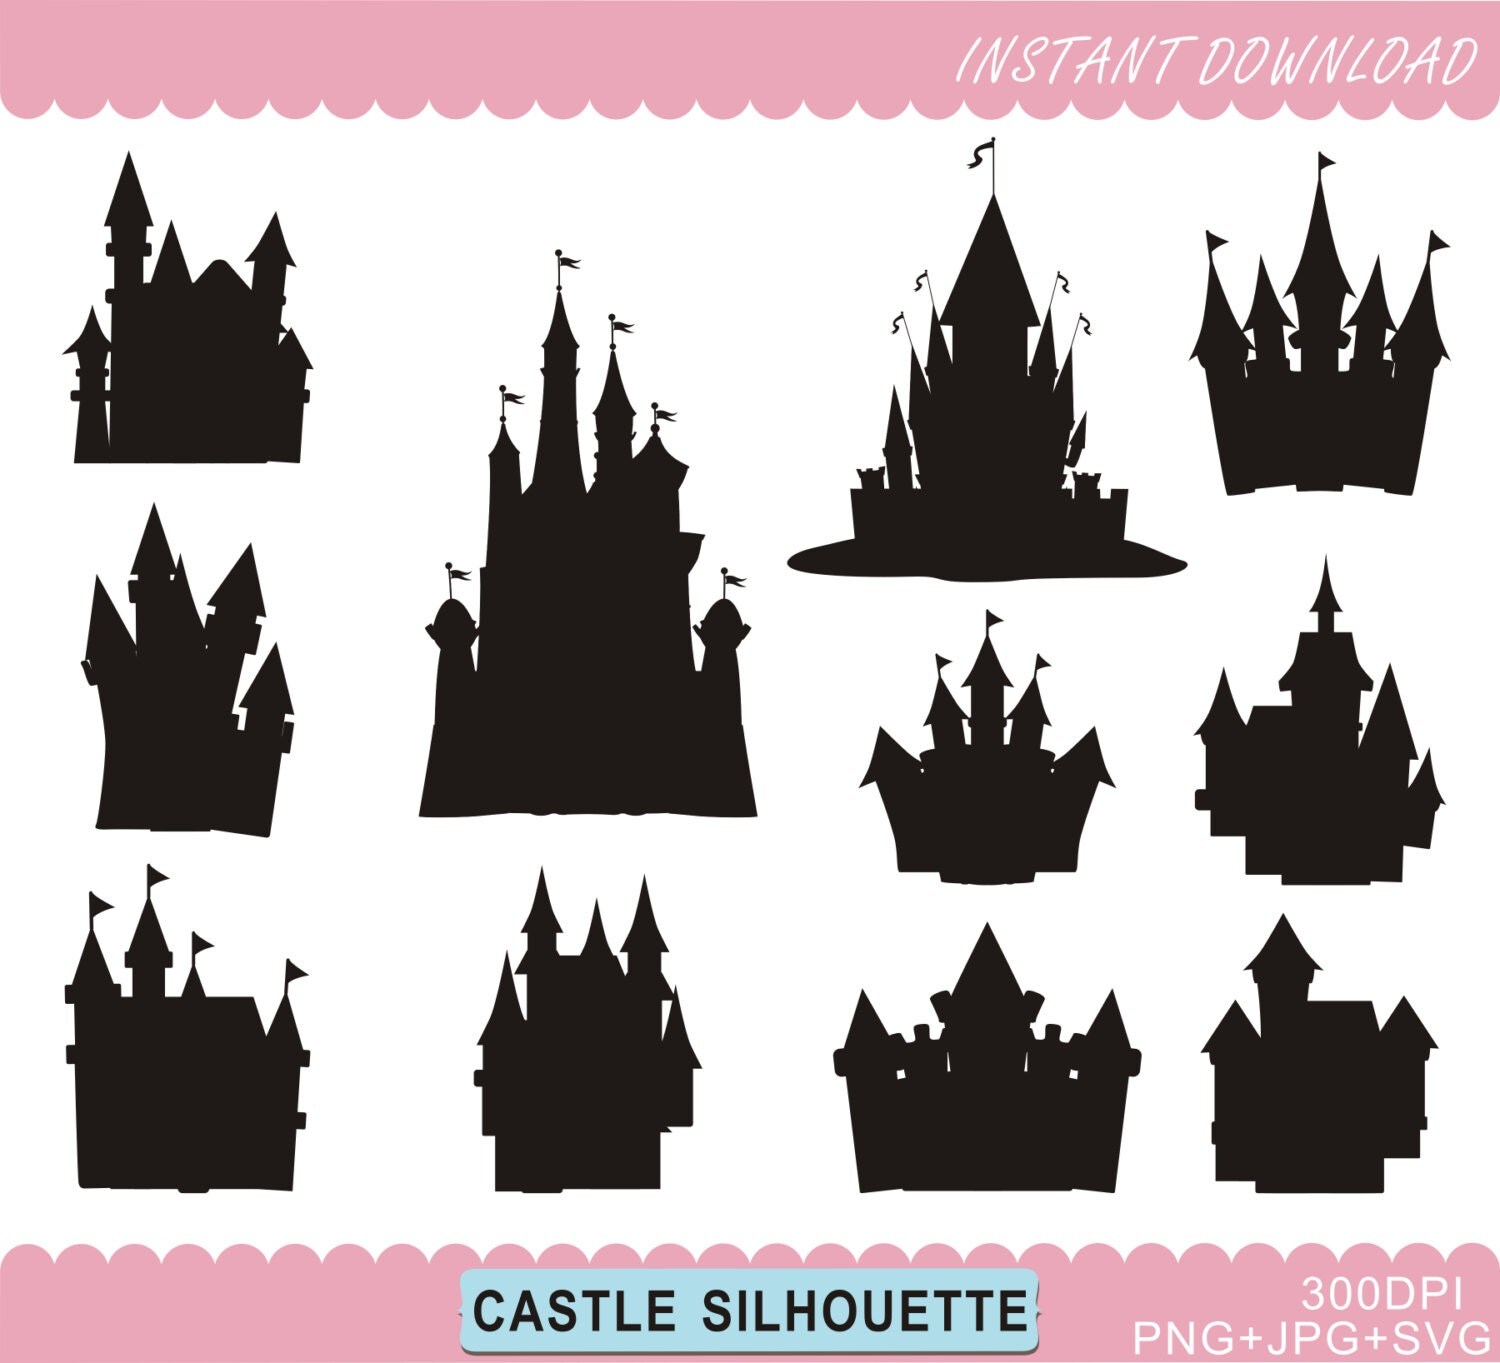 Castle Silhouettes Clipart Disney Castle Silhouettes Castle